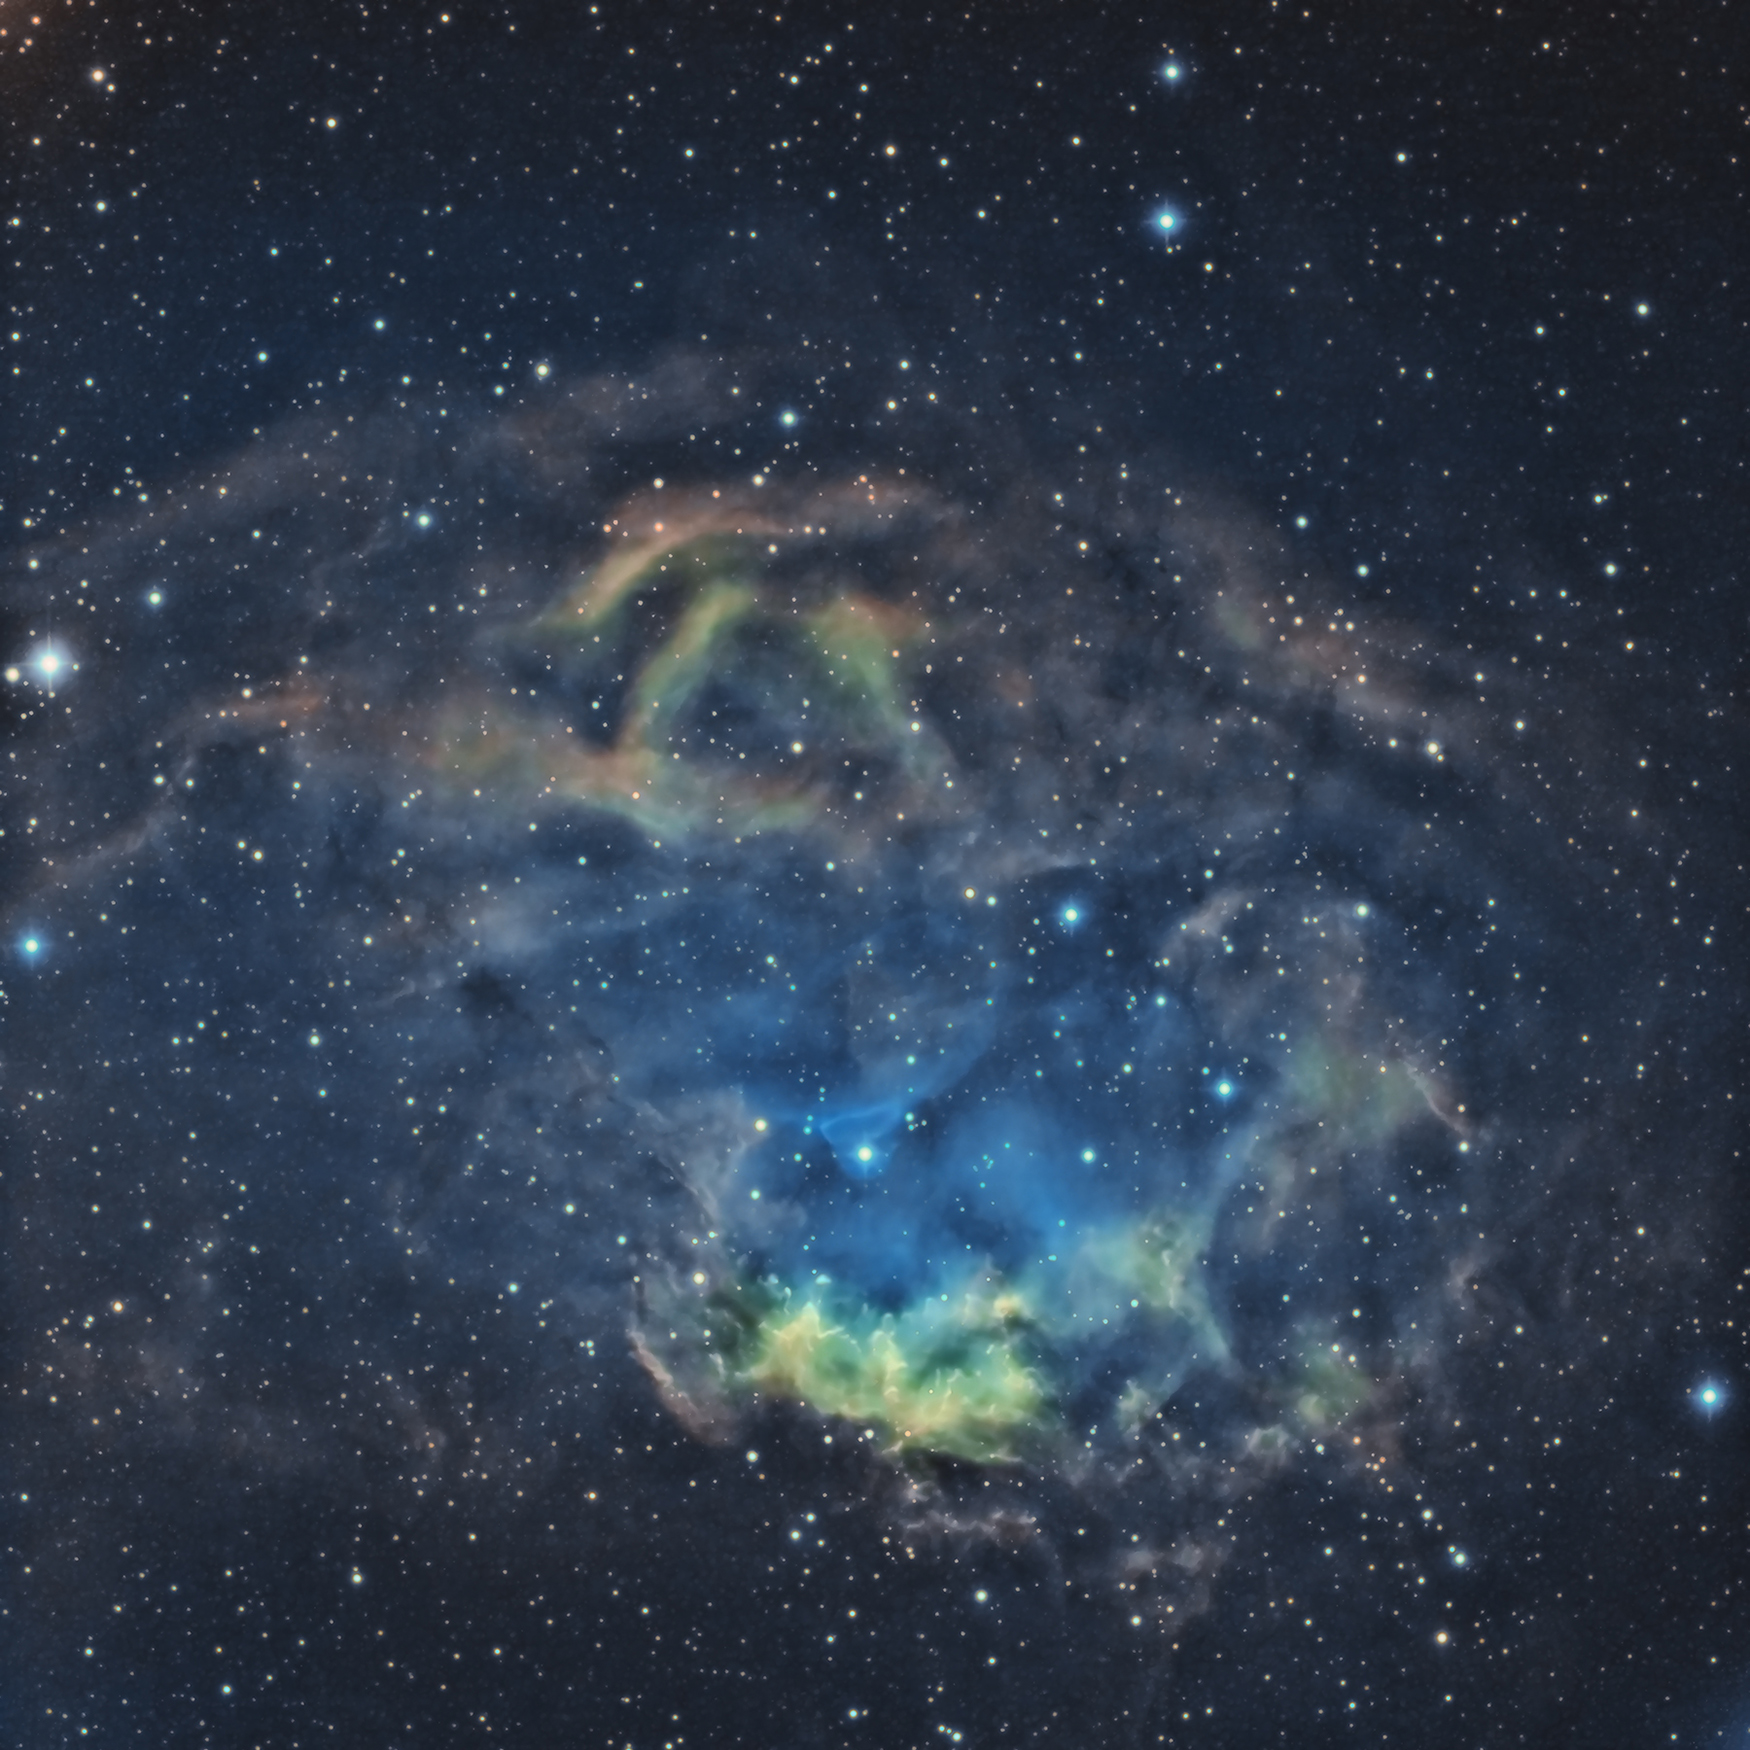 sh2-261 Lower's nebula